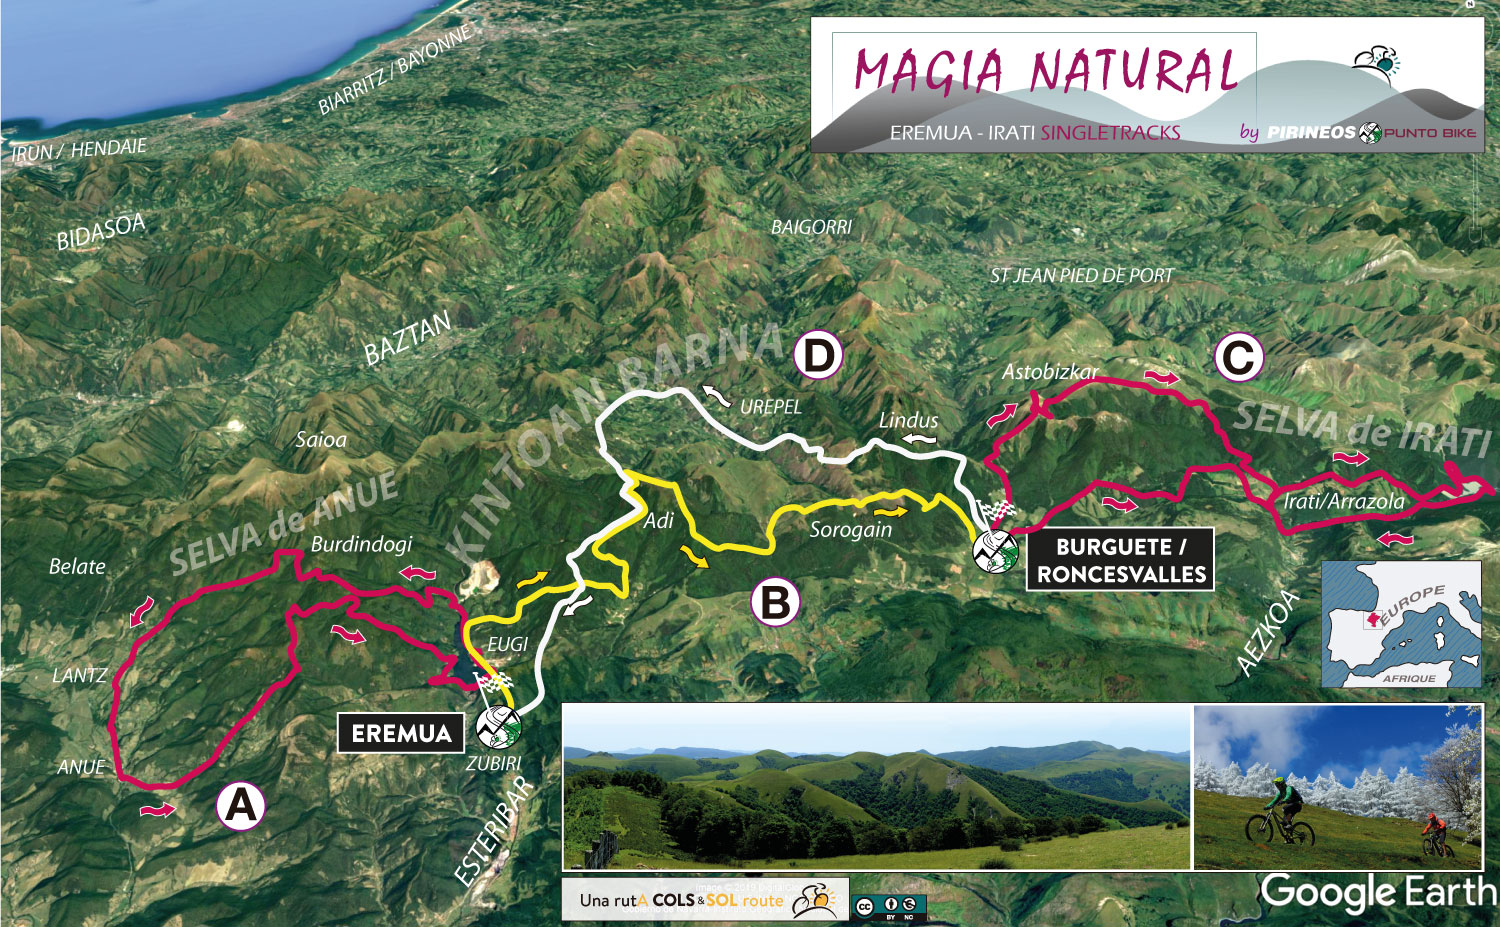 Carte-Magia-Natural-Eremua-Roncesvalles-mtb